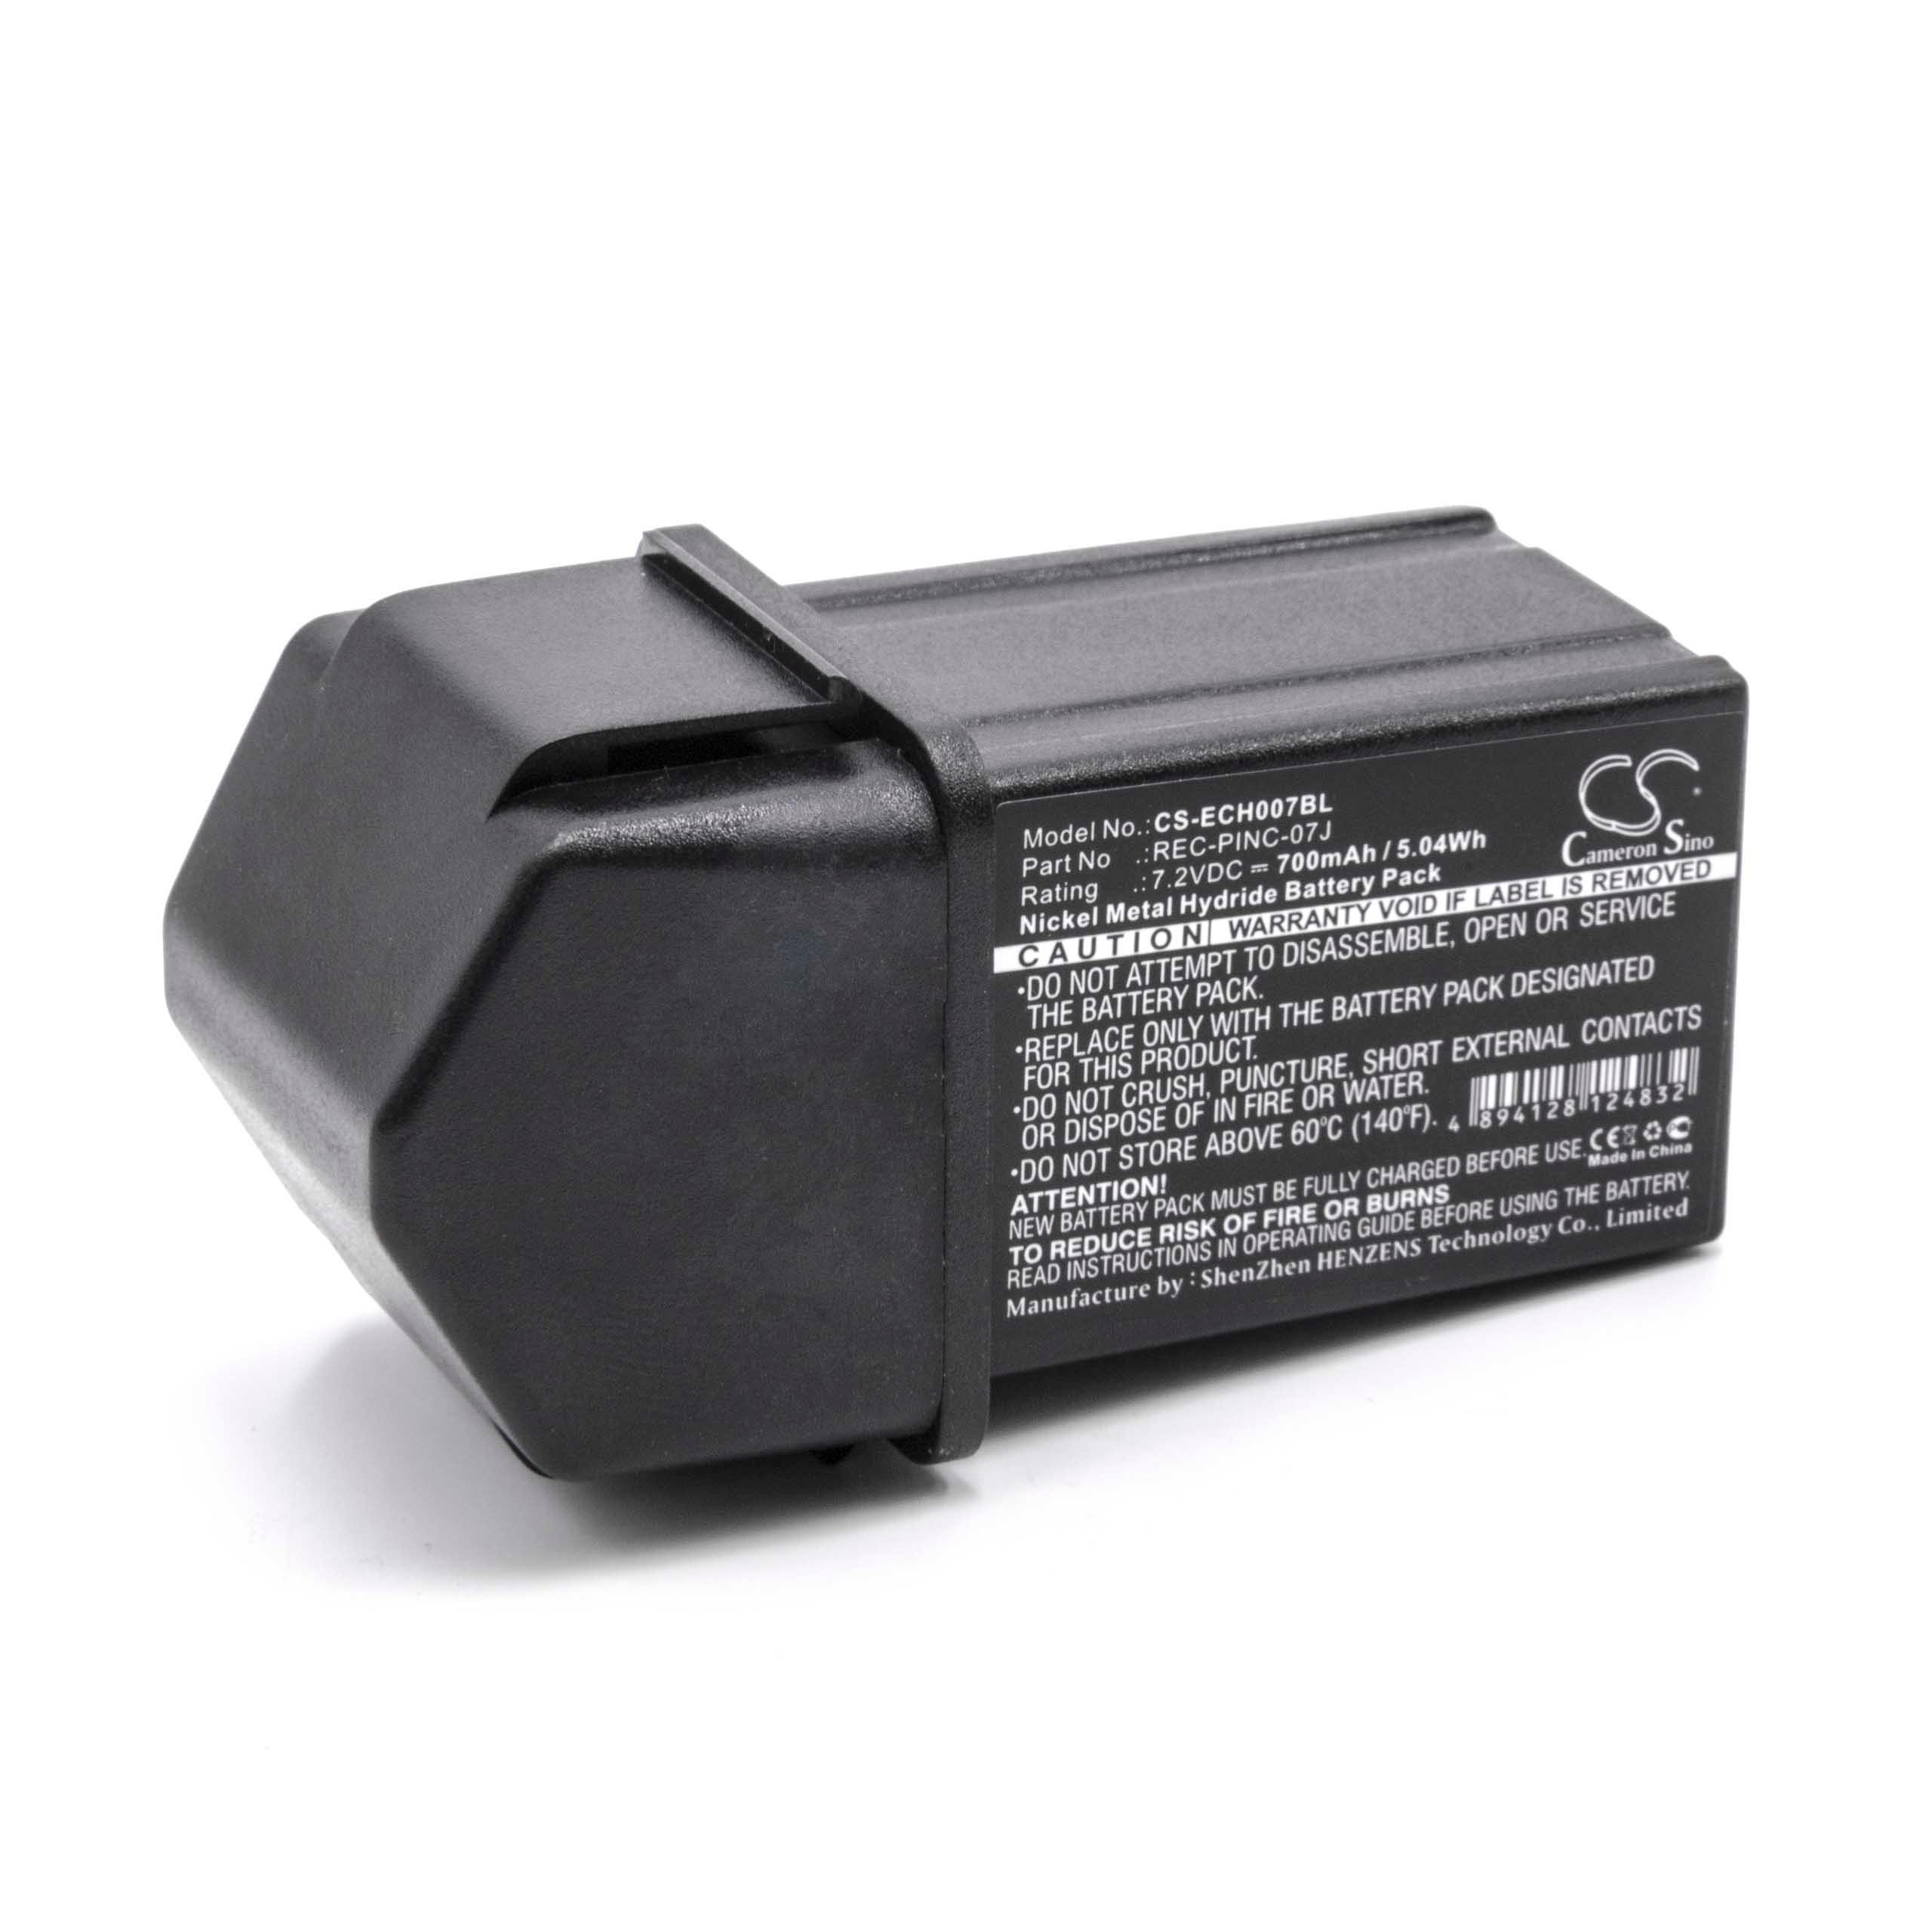 Batterie remplace Elca REC-PINC-07J, PINC 07MH, PINC-07MH pour télécommande - 700mAh 7,2V NiMH